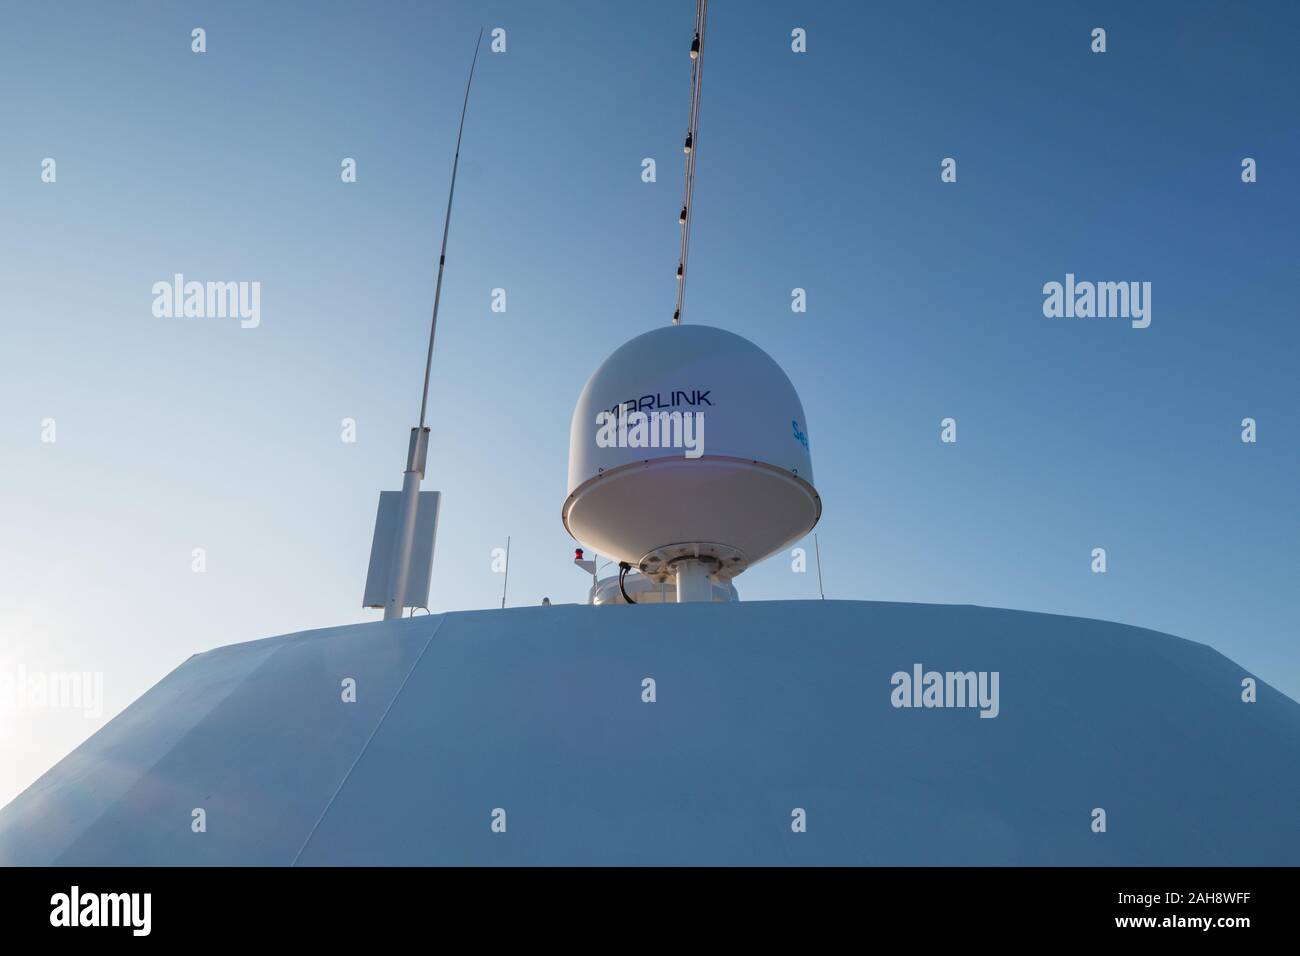 Marlink Kommunikation Satelliten an Bord eines Schiffes Stockfoto